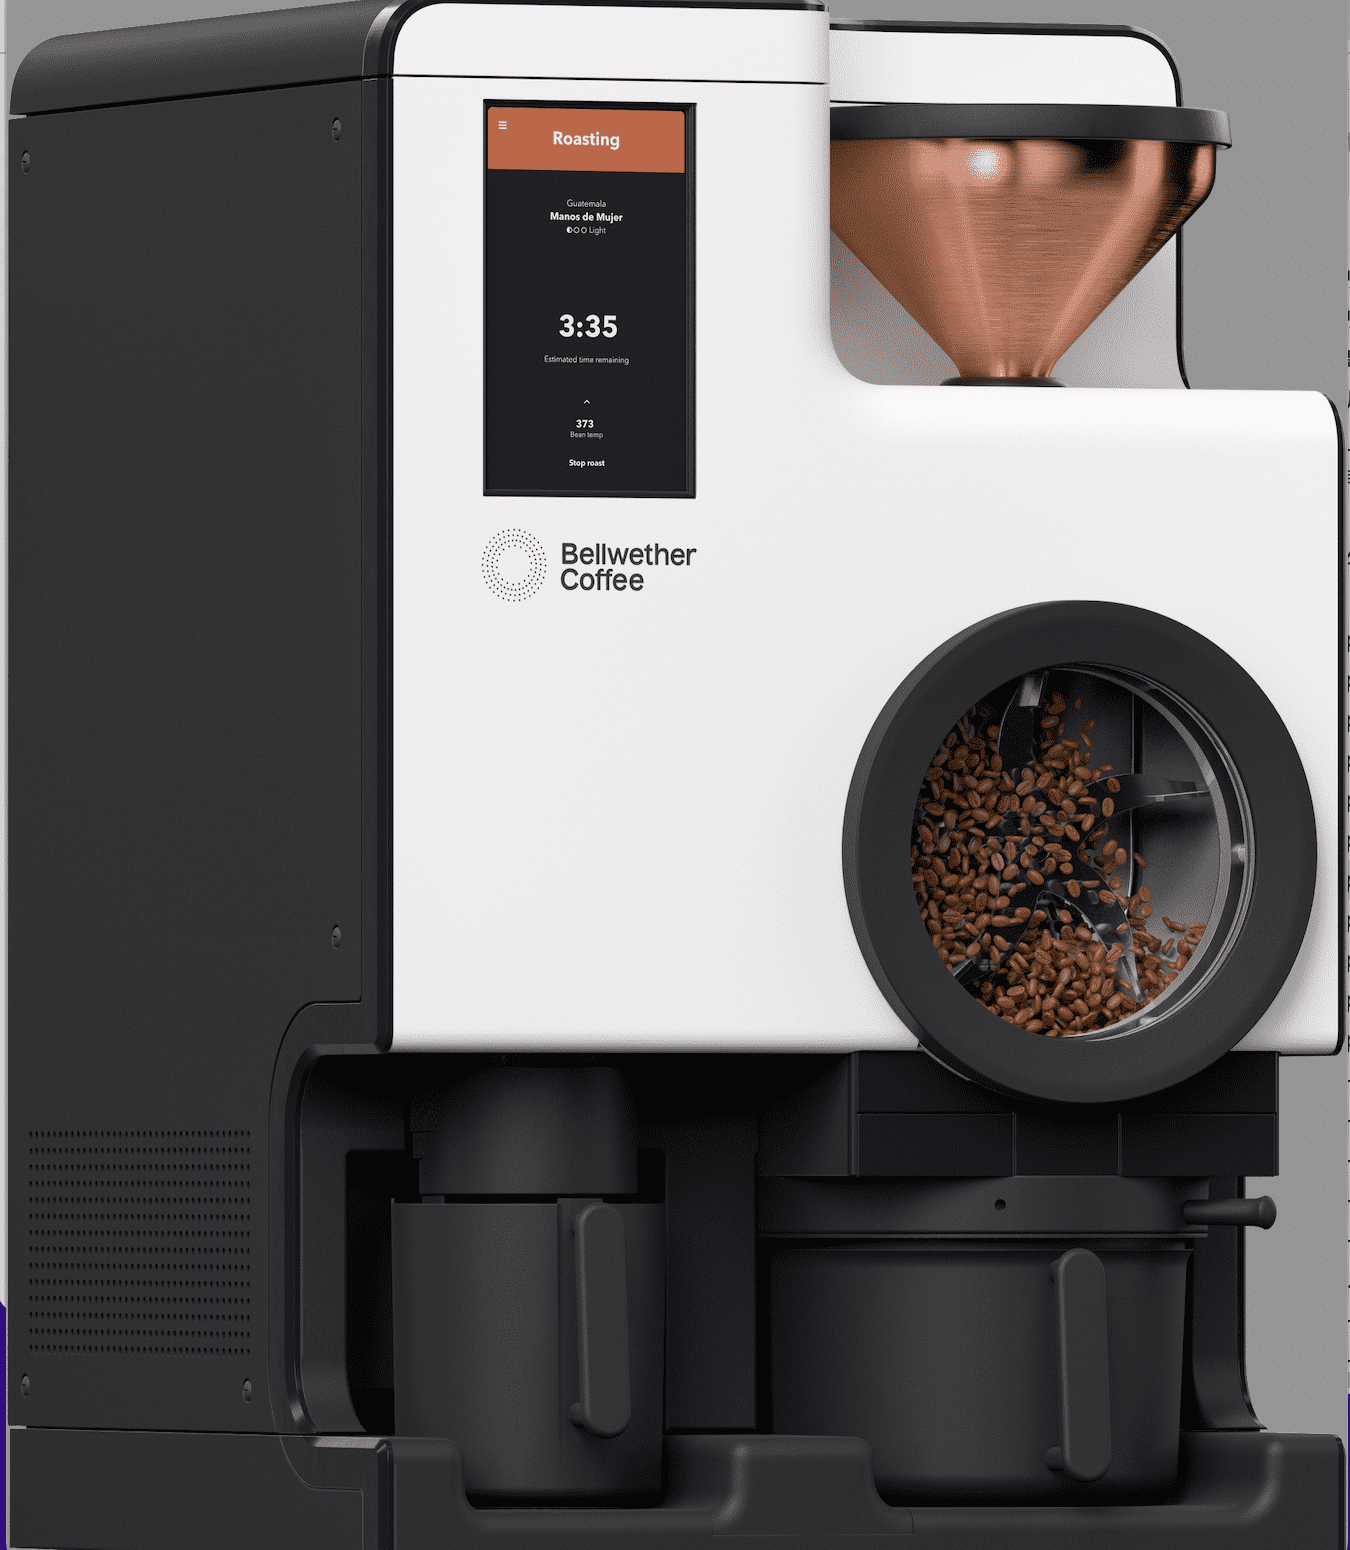 コーヒーマシンのプロフェッショナルカンパニー　
ブルーマチックジャパンがマイクロ焙煎機の革命的企業
Bellwether Coffee(アメリカ)と提携　
コンパクトな業務用焙煎機でコーヒービジネスをサステナブルに